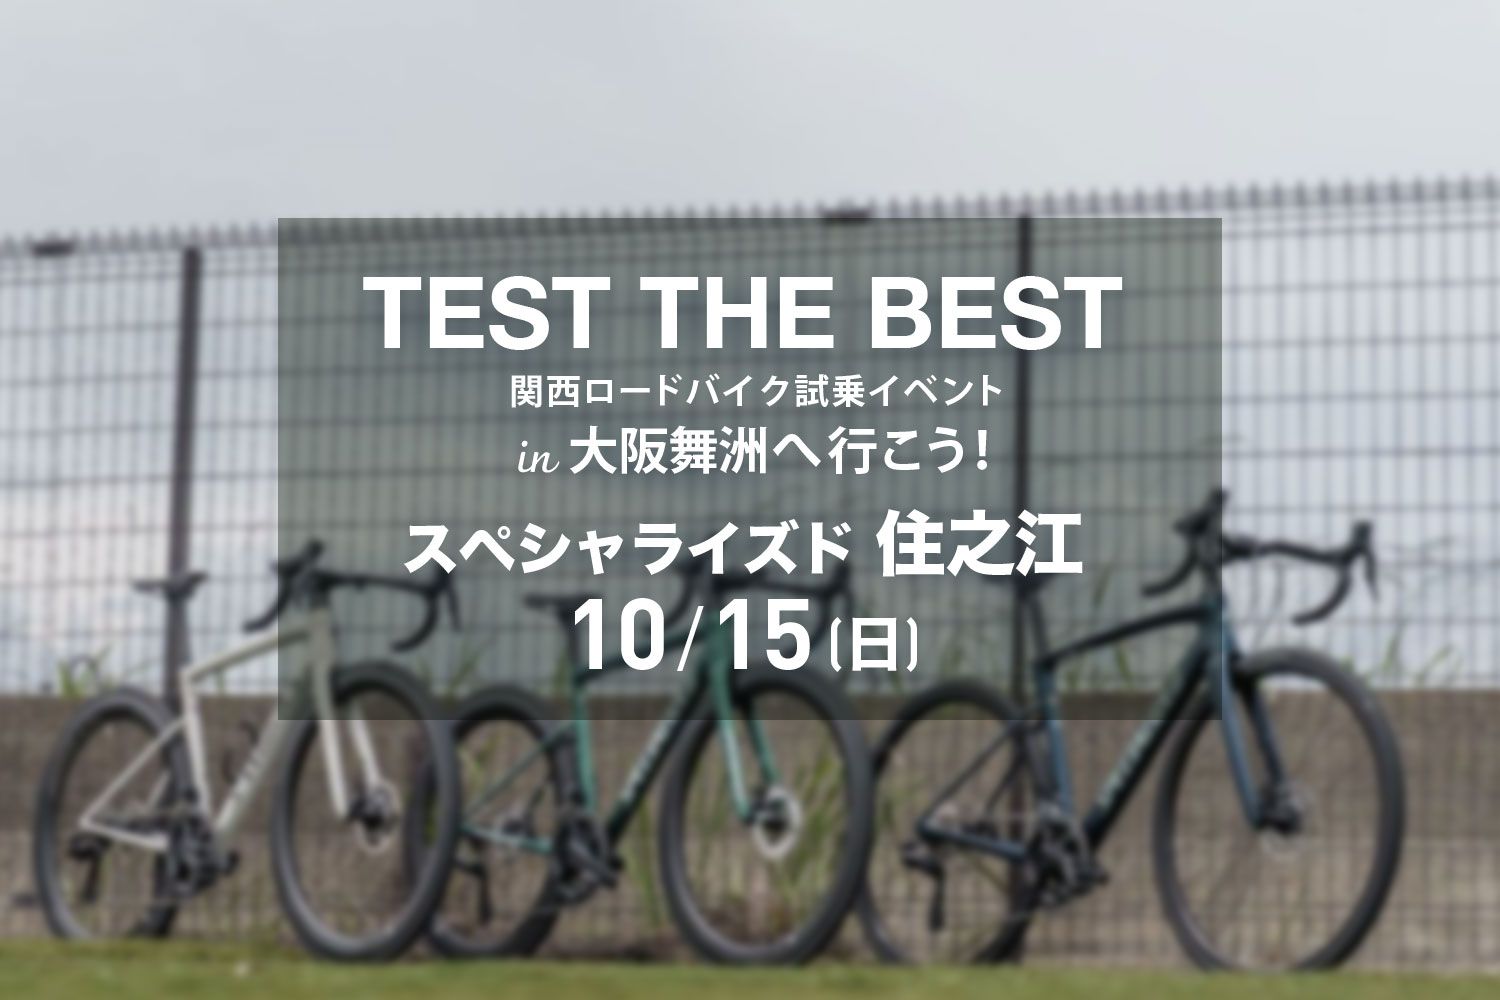 10月15日(日)スペシャライズド住之江発着 TEST THE BEST 関西ロードバイク試乗会 in大阪舞洲へ行こう！